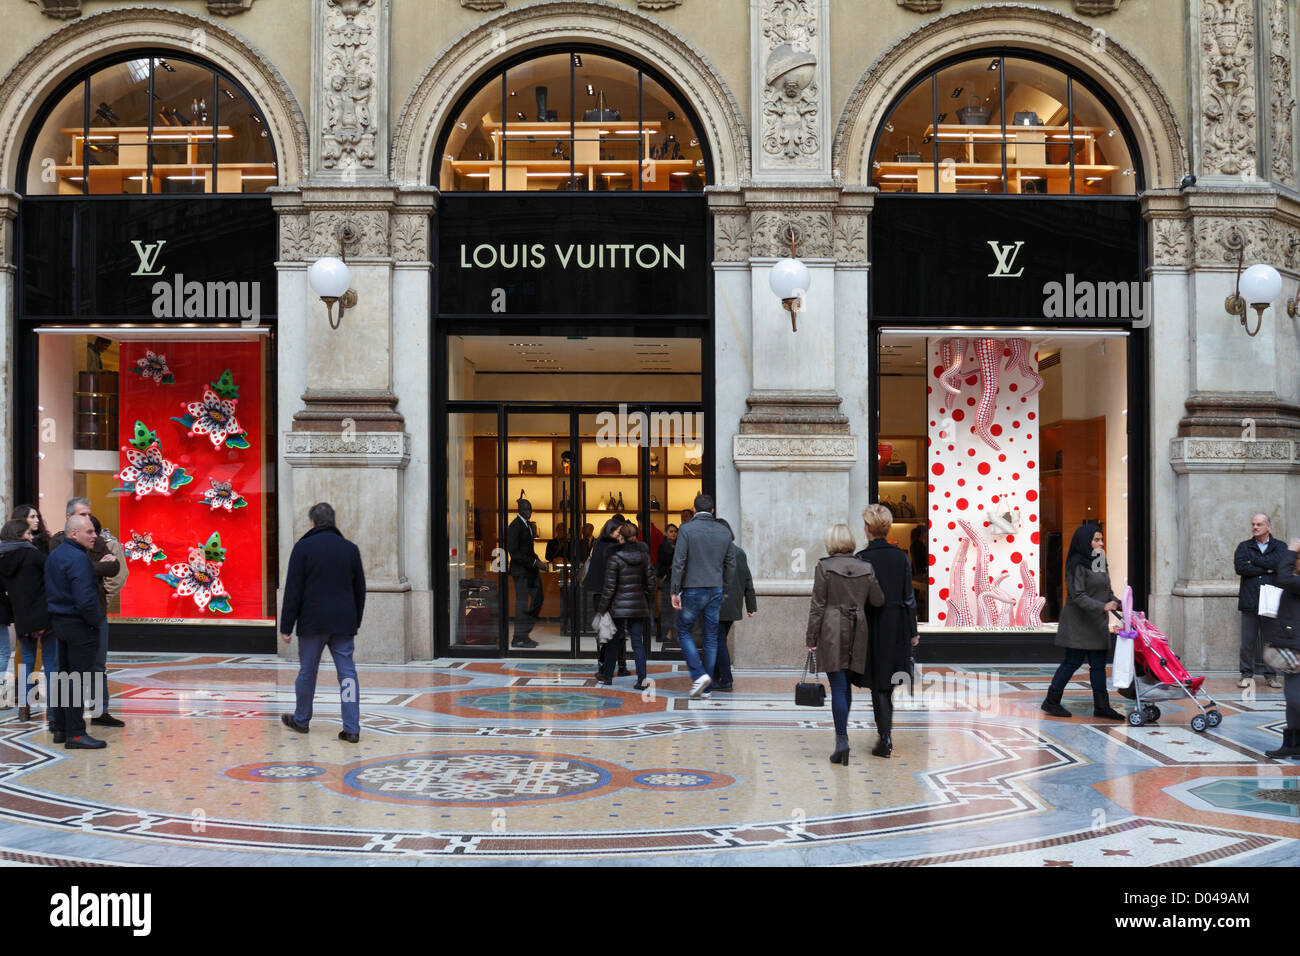 Louis Vuitton Store Galleria Vittorio Emanuele Ii Milan Italy Europe Stock Photo, Royalty Free ...